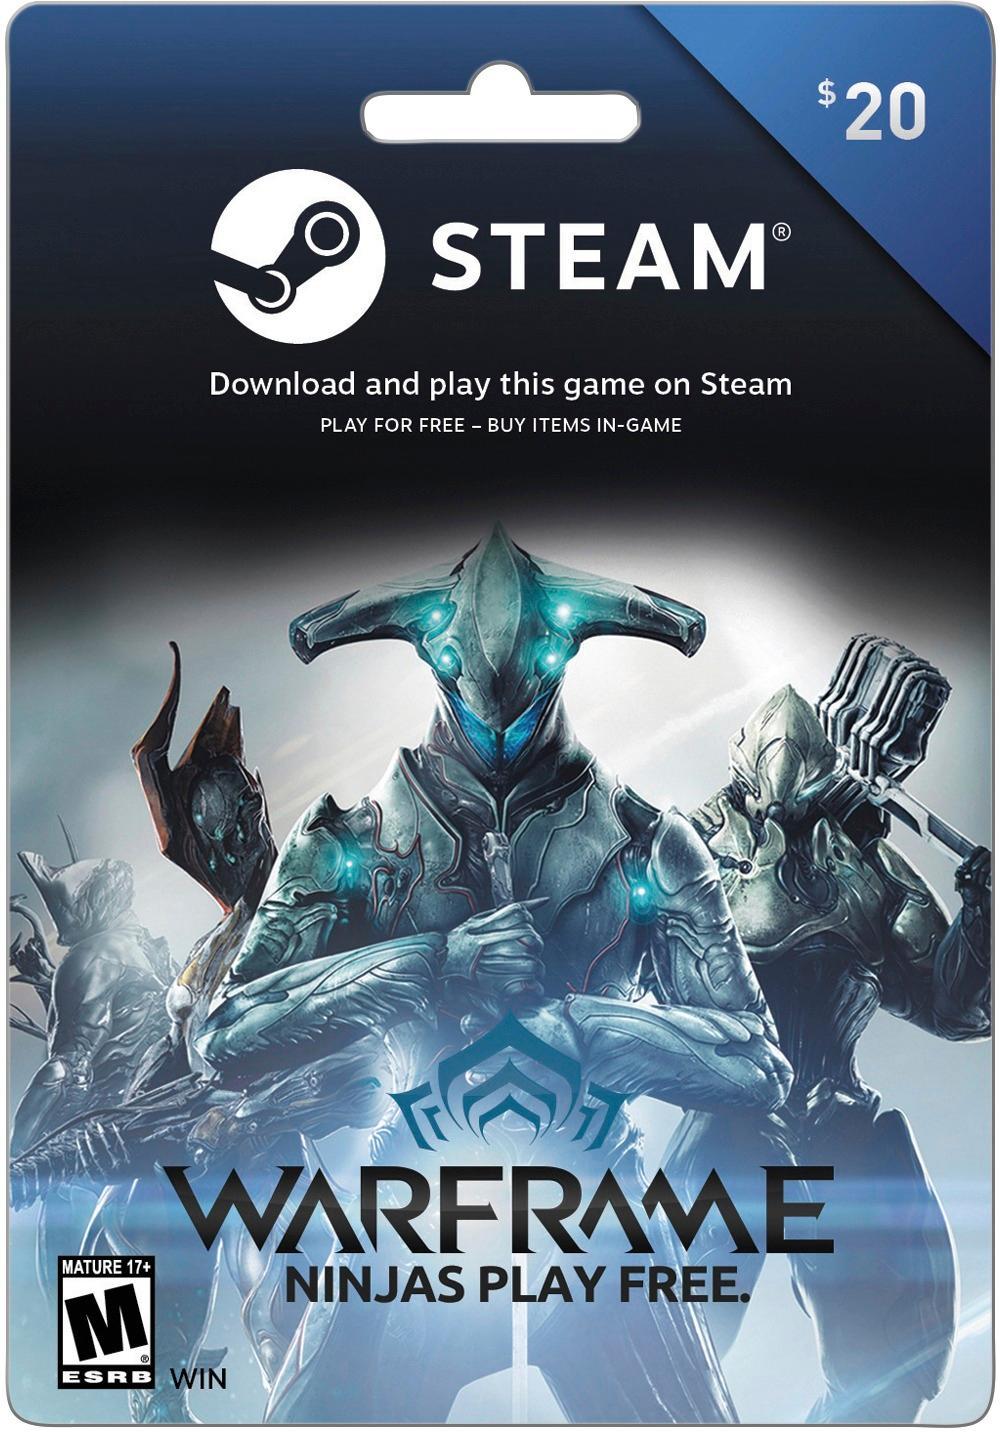 Zullen oplichterij afwijzing Valve Steam Wallet $20 Gift Card STEAM WARFRAME 2017 $20 - Best Buy